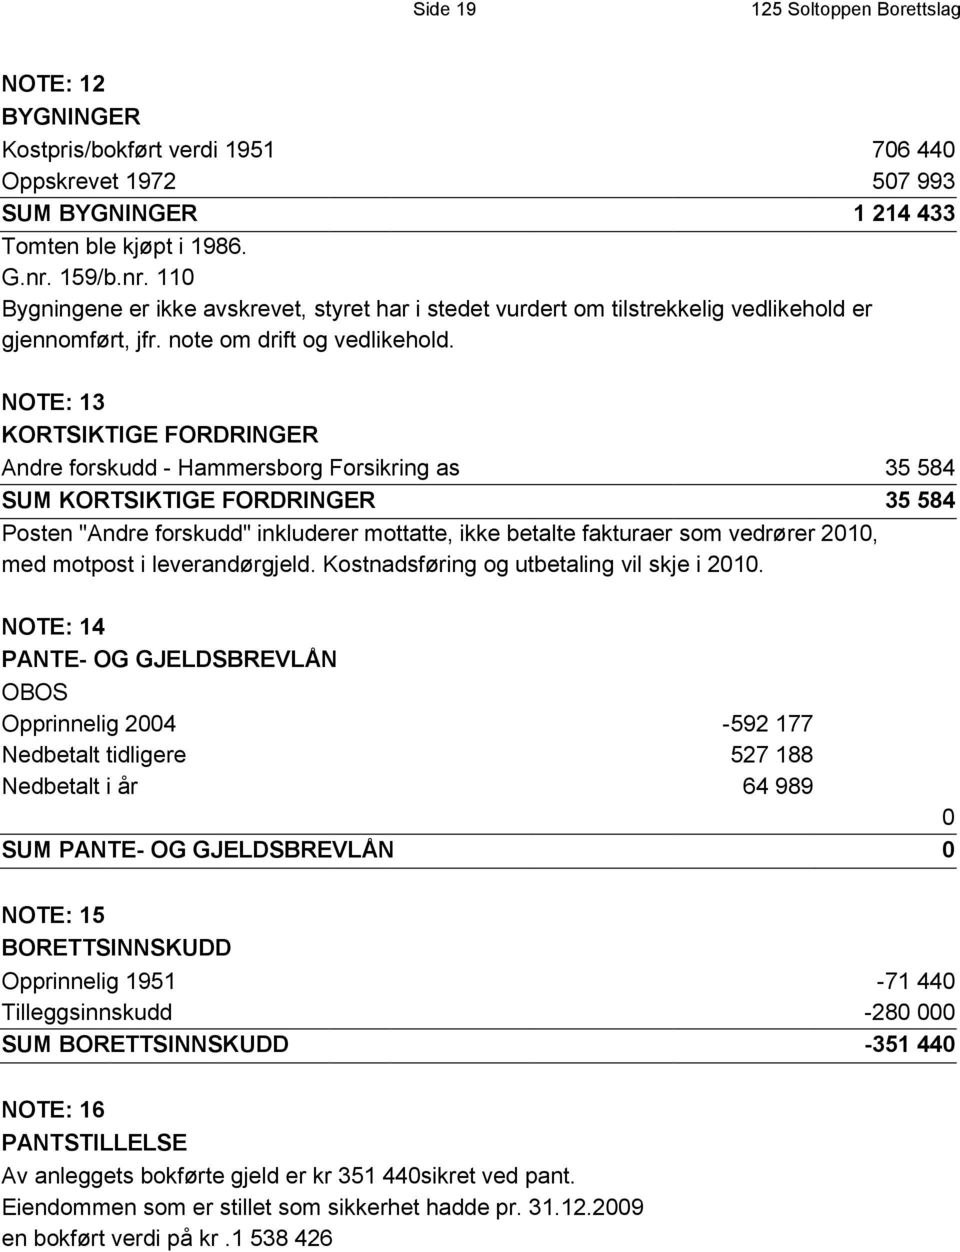 NOTE: 13 KORTSIKTIGE FORDRINGER Andre forskudd - Hammersborg Forsikring as 35 584 SUM KORTSIKTIGE FORDRINGER 35 584 Posten "Andre forskudd" inkluderer mottatte, ikke betalte fakturaer som vedrører